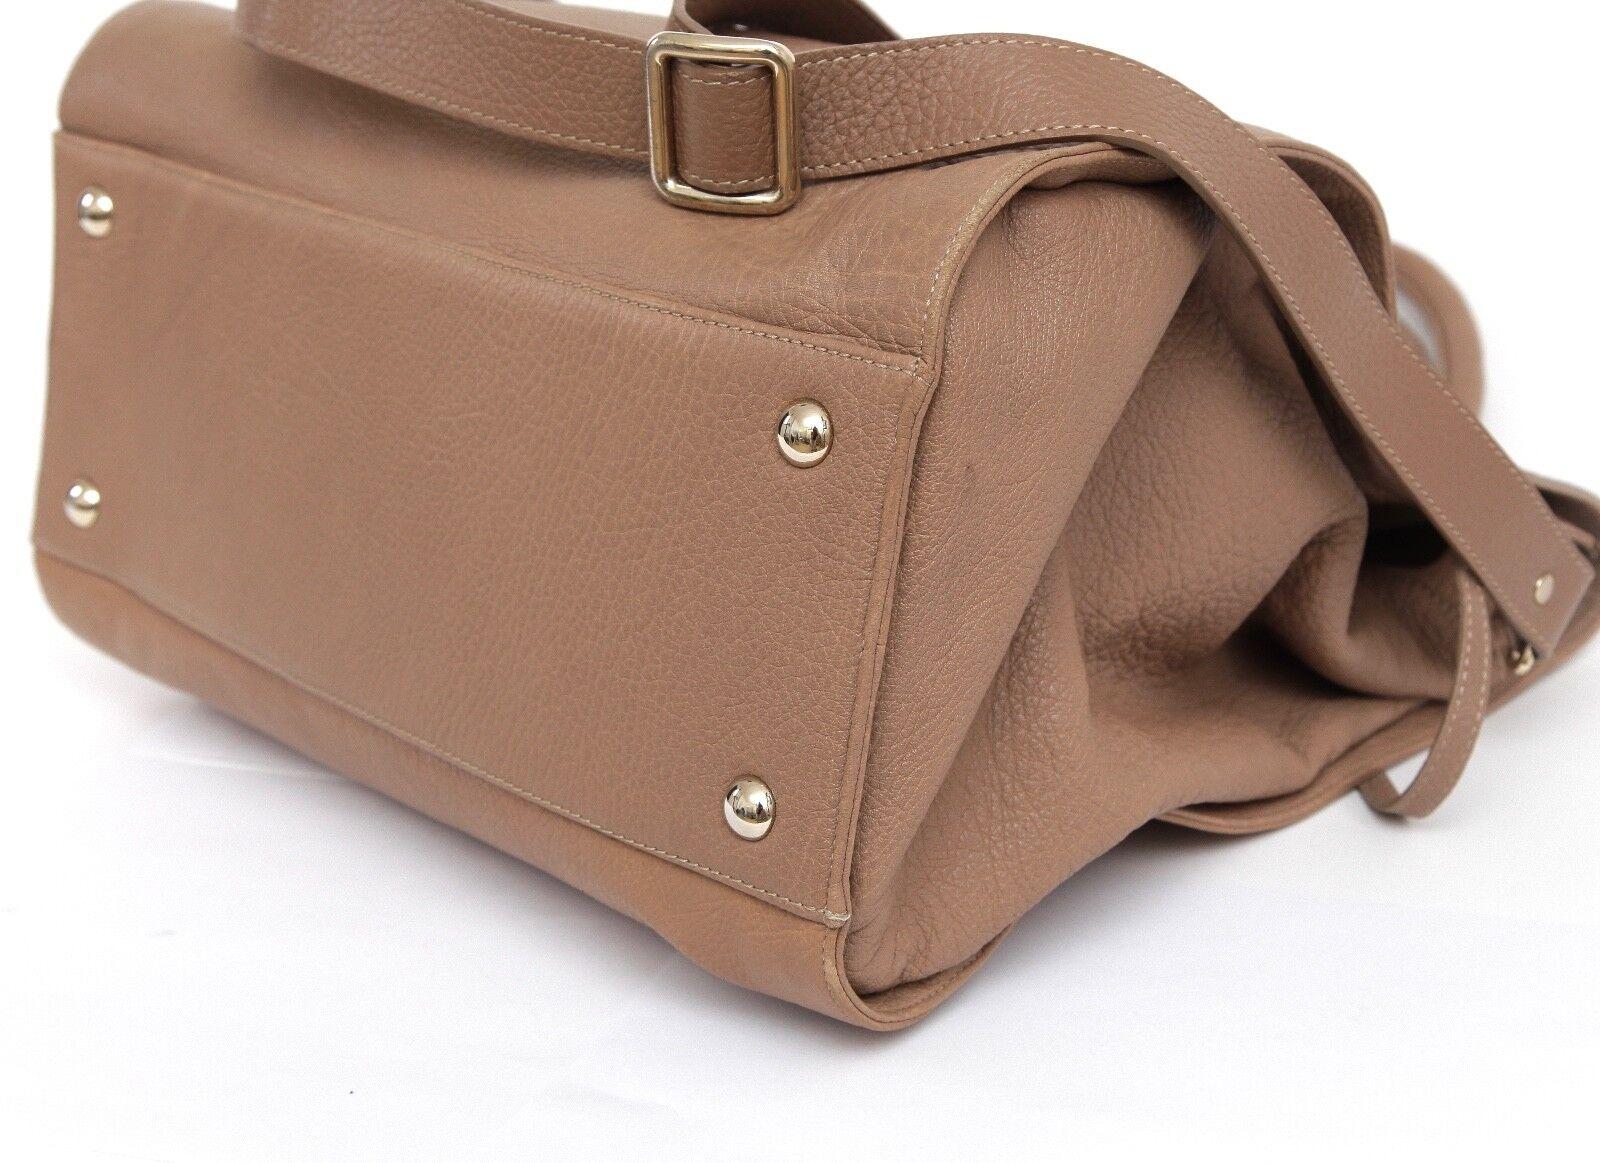 JIMMY CHOO Bag Tan Leather Large ROSABEL Satchel Tote Shoulder Strap Gold HW For Sale 1